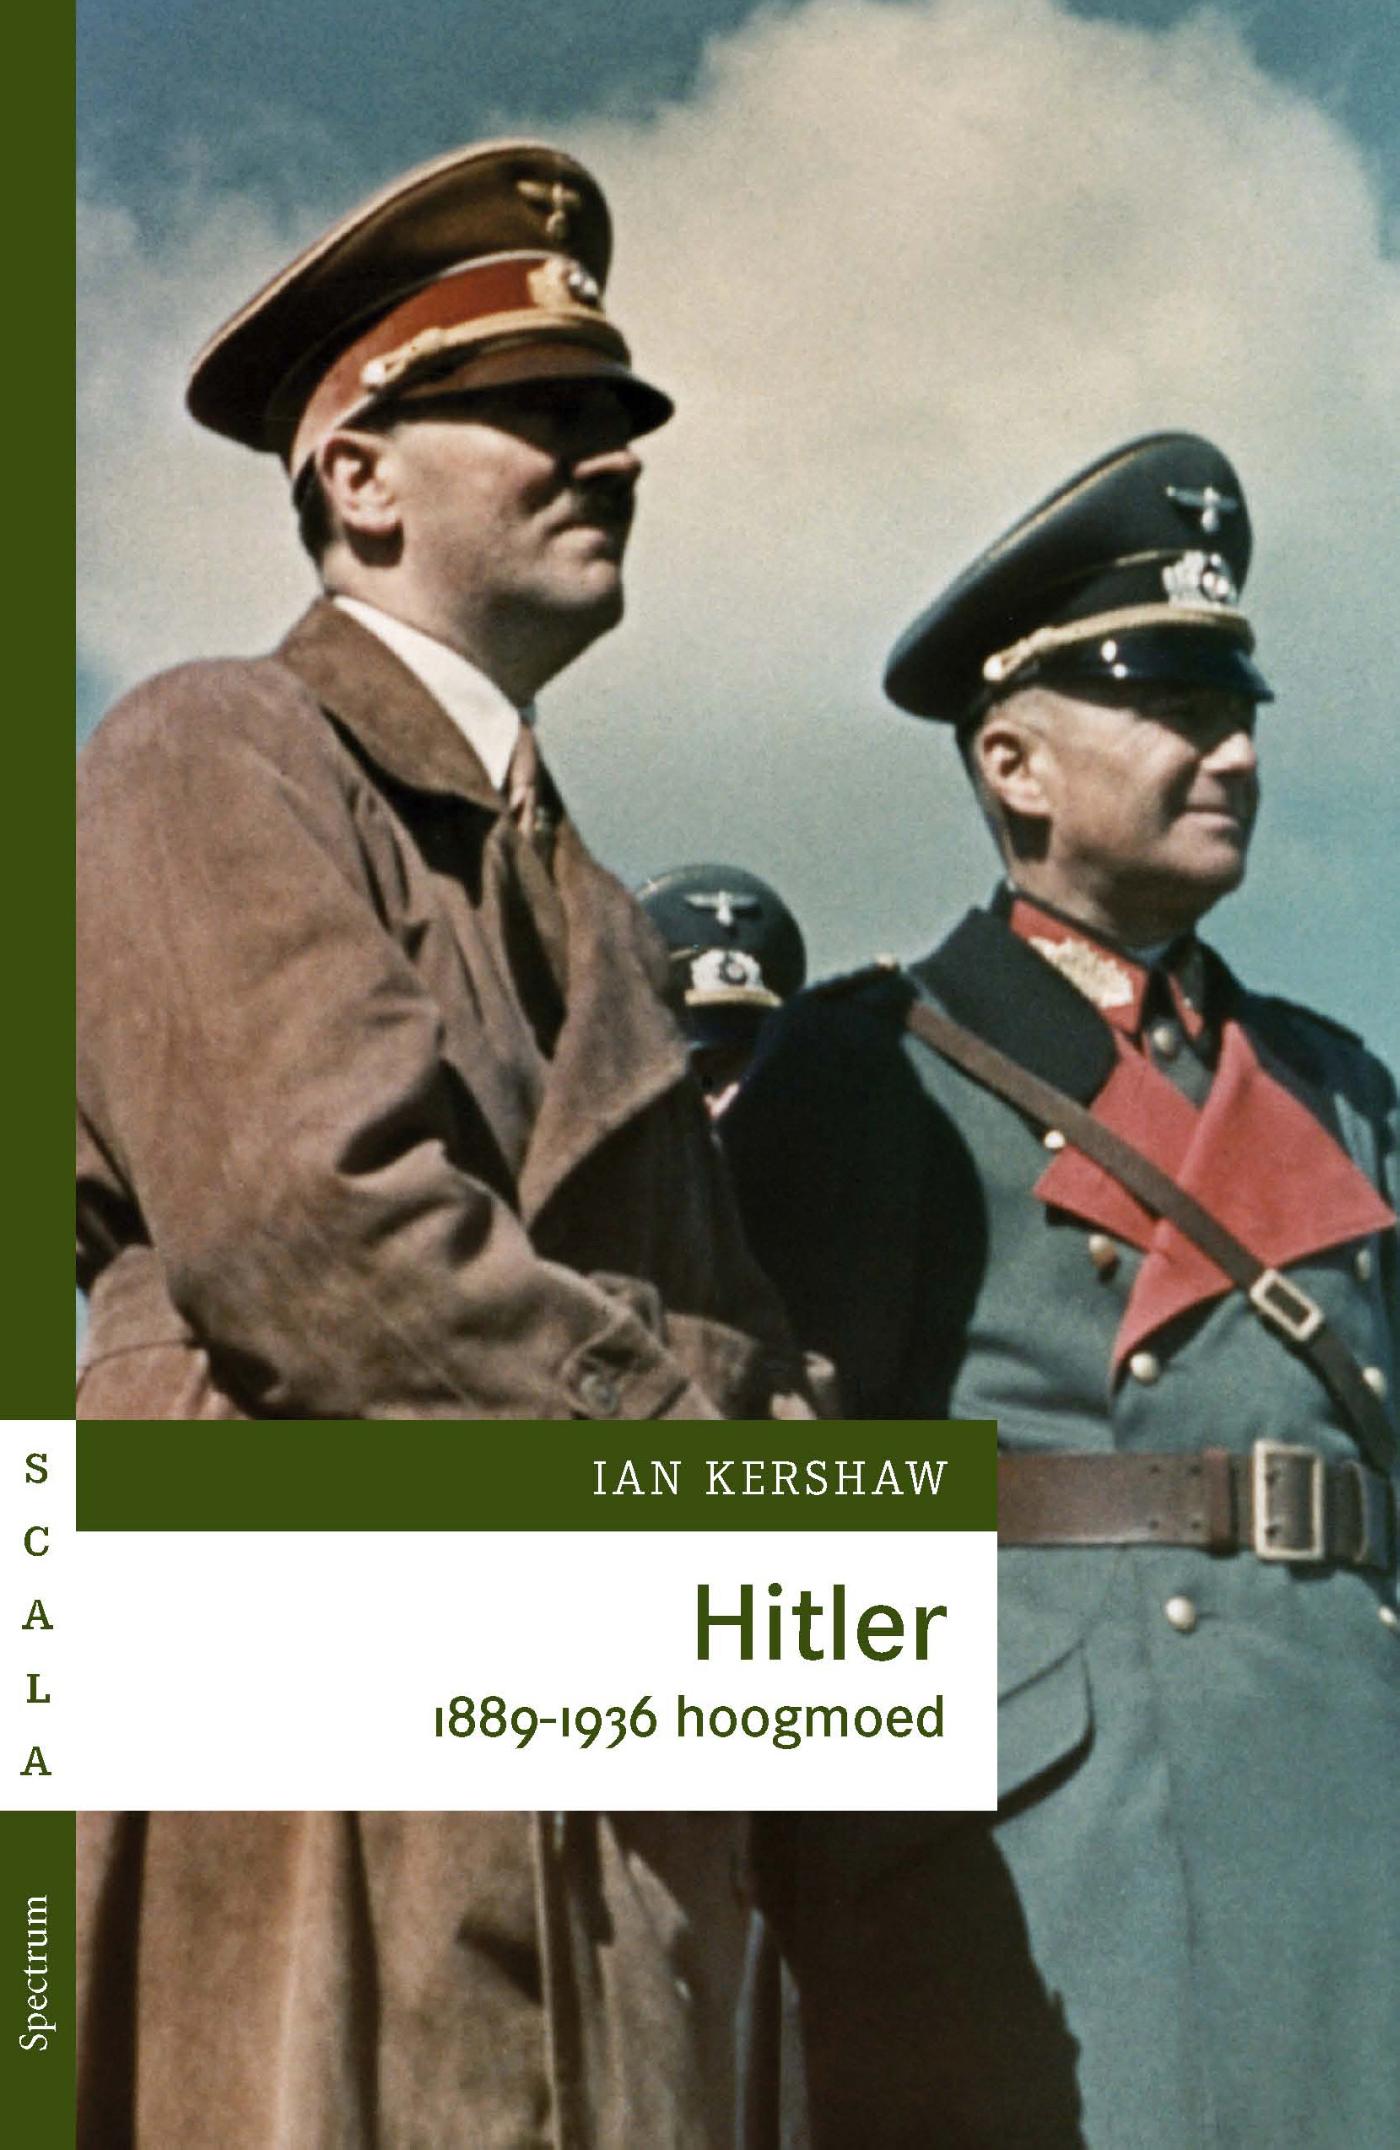 Hitler 1889-1936 hoogmoed (Ebook)